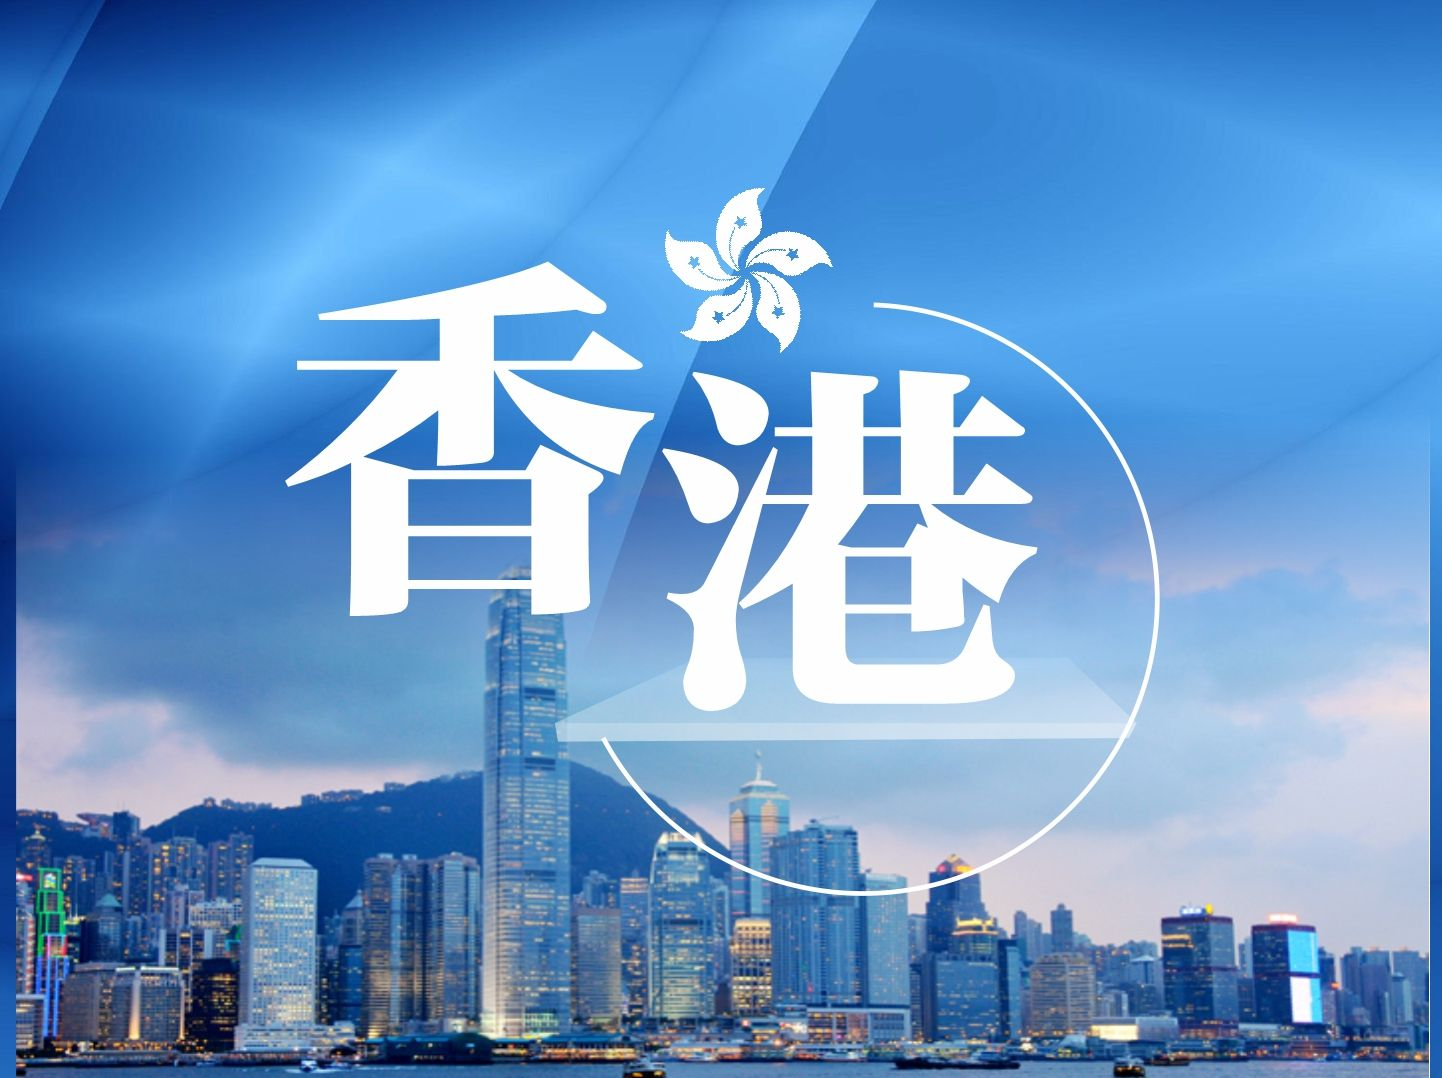 香港特区第六任行政长官选举投票开始